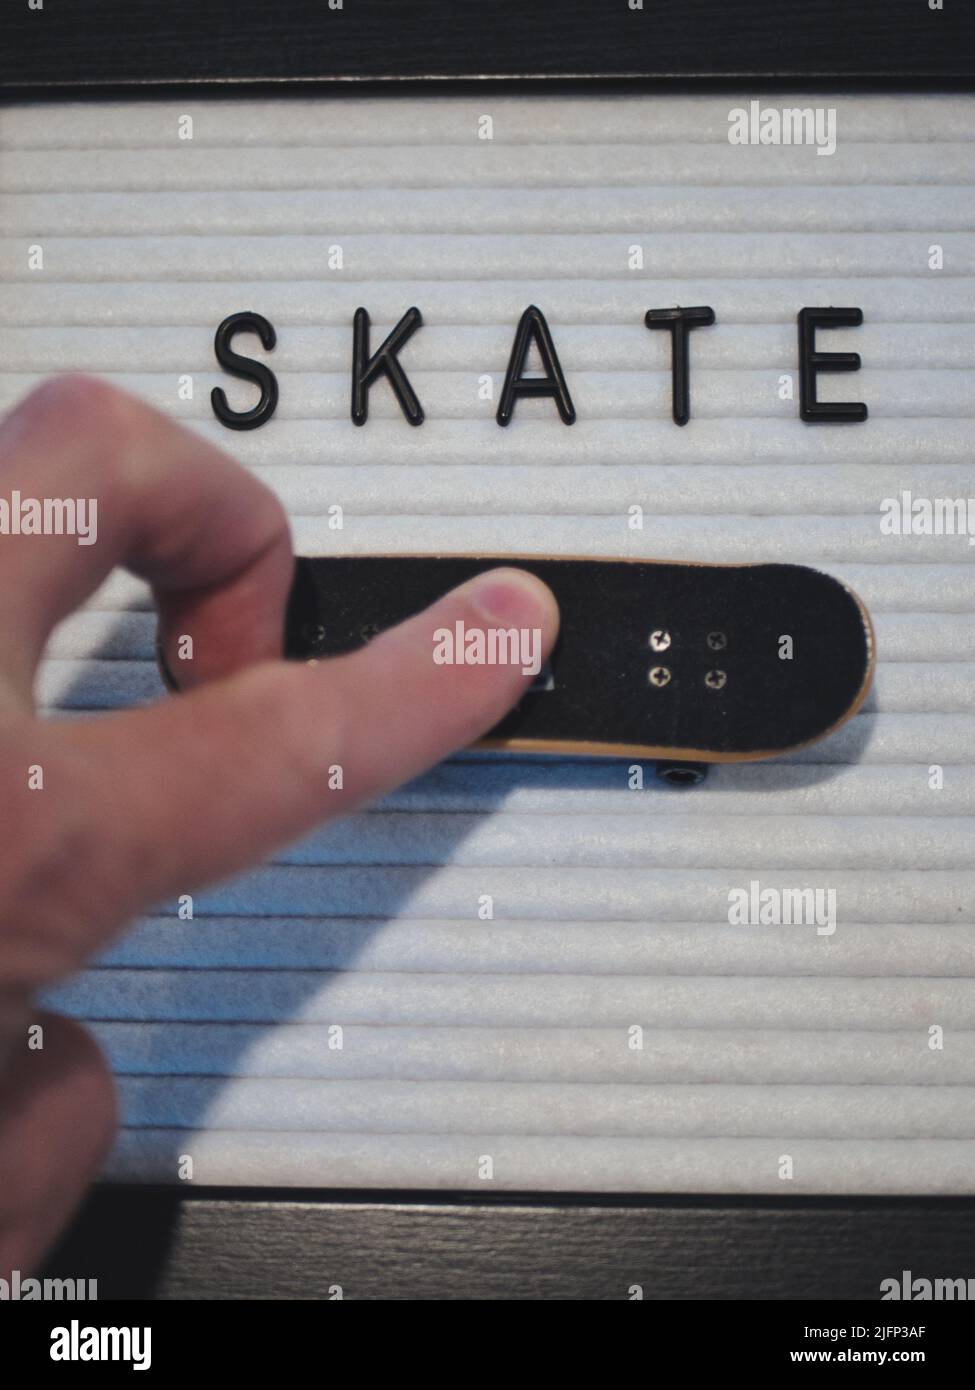 Skate in schwarzem Text. Professioneller Fingerboard-Experte, der einen 360 Kickflip (tre Flip) macht. Lustige Grafik, die Skateboarding in einer lizenzfreien Darstellung illustriert Stockfoto